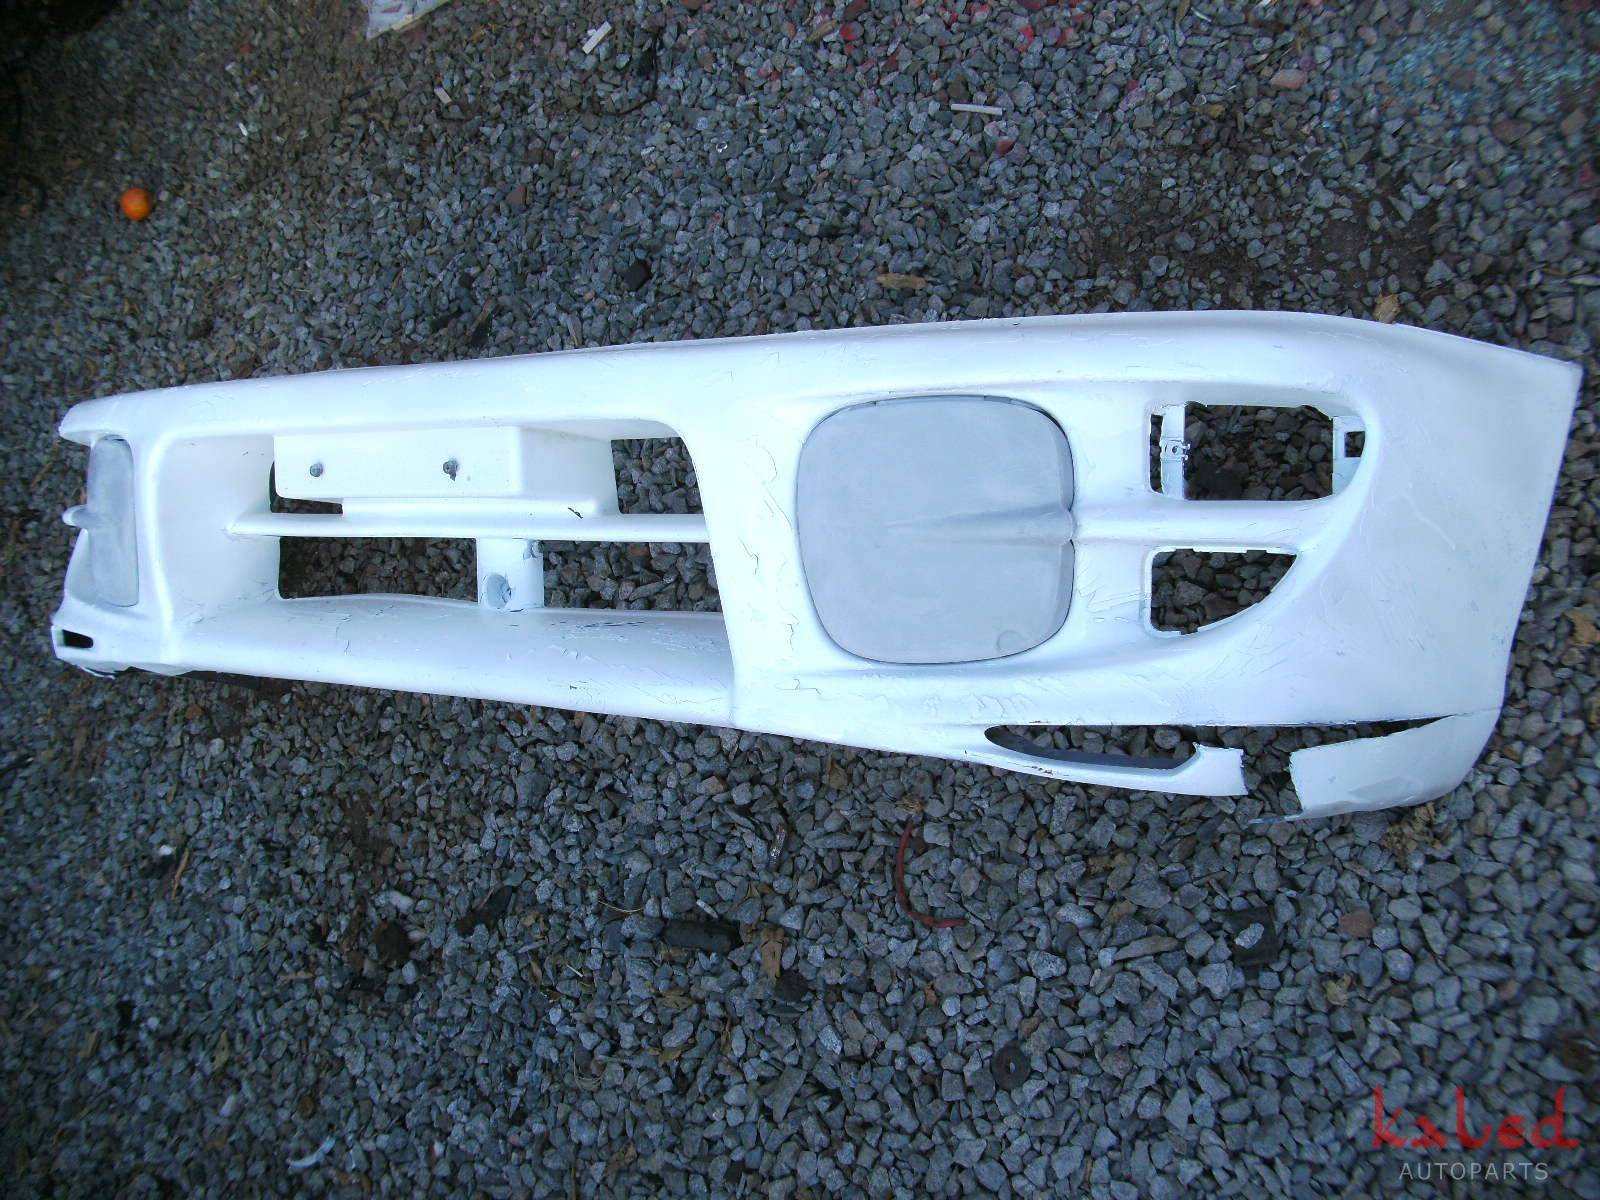 Par de Tampas do parachoque em Fibra p/ Subaru Impreza GT 2000 - Kaled Auto Parts